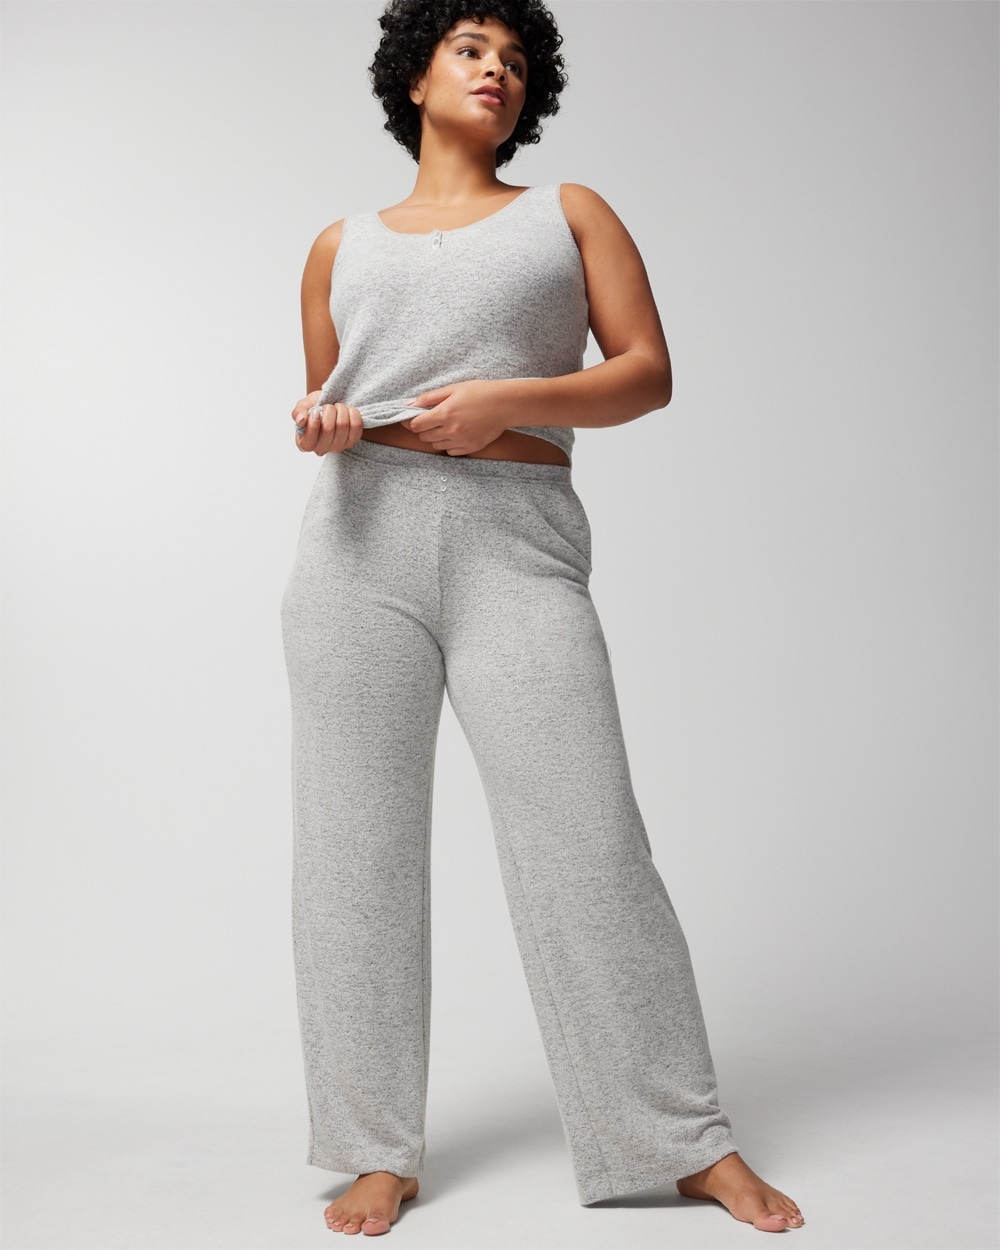 Soma Women's Cozyluxe Pajama Pants In Black Size Medium |